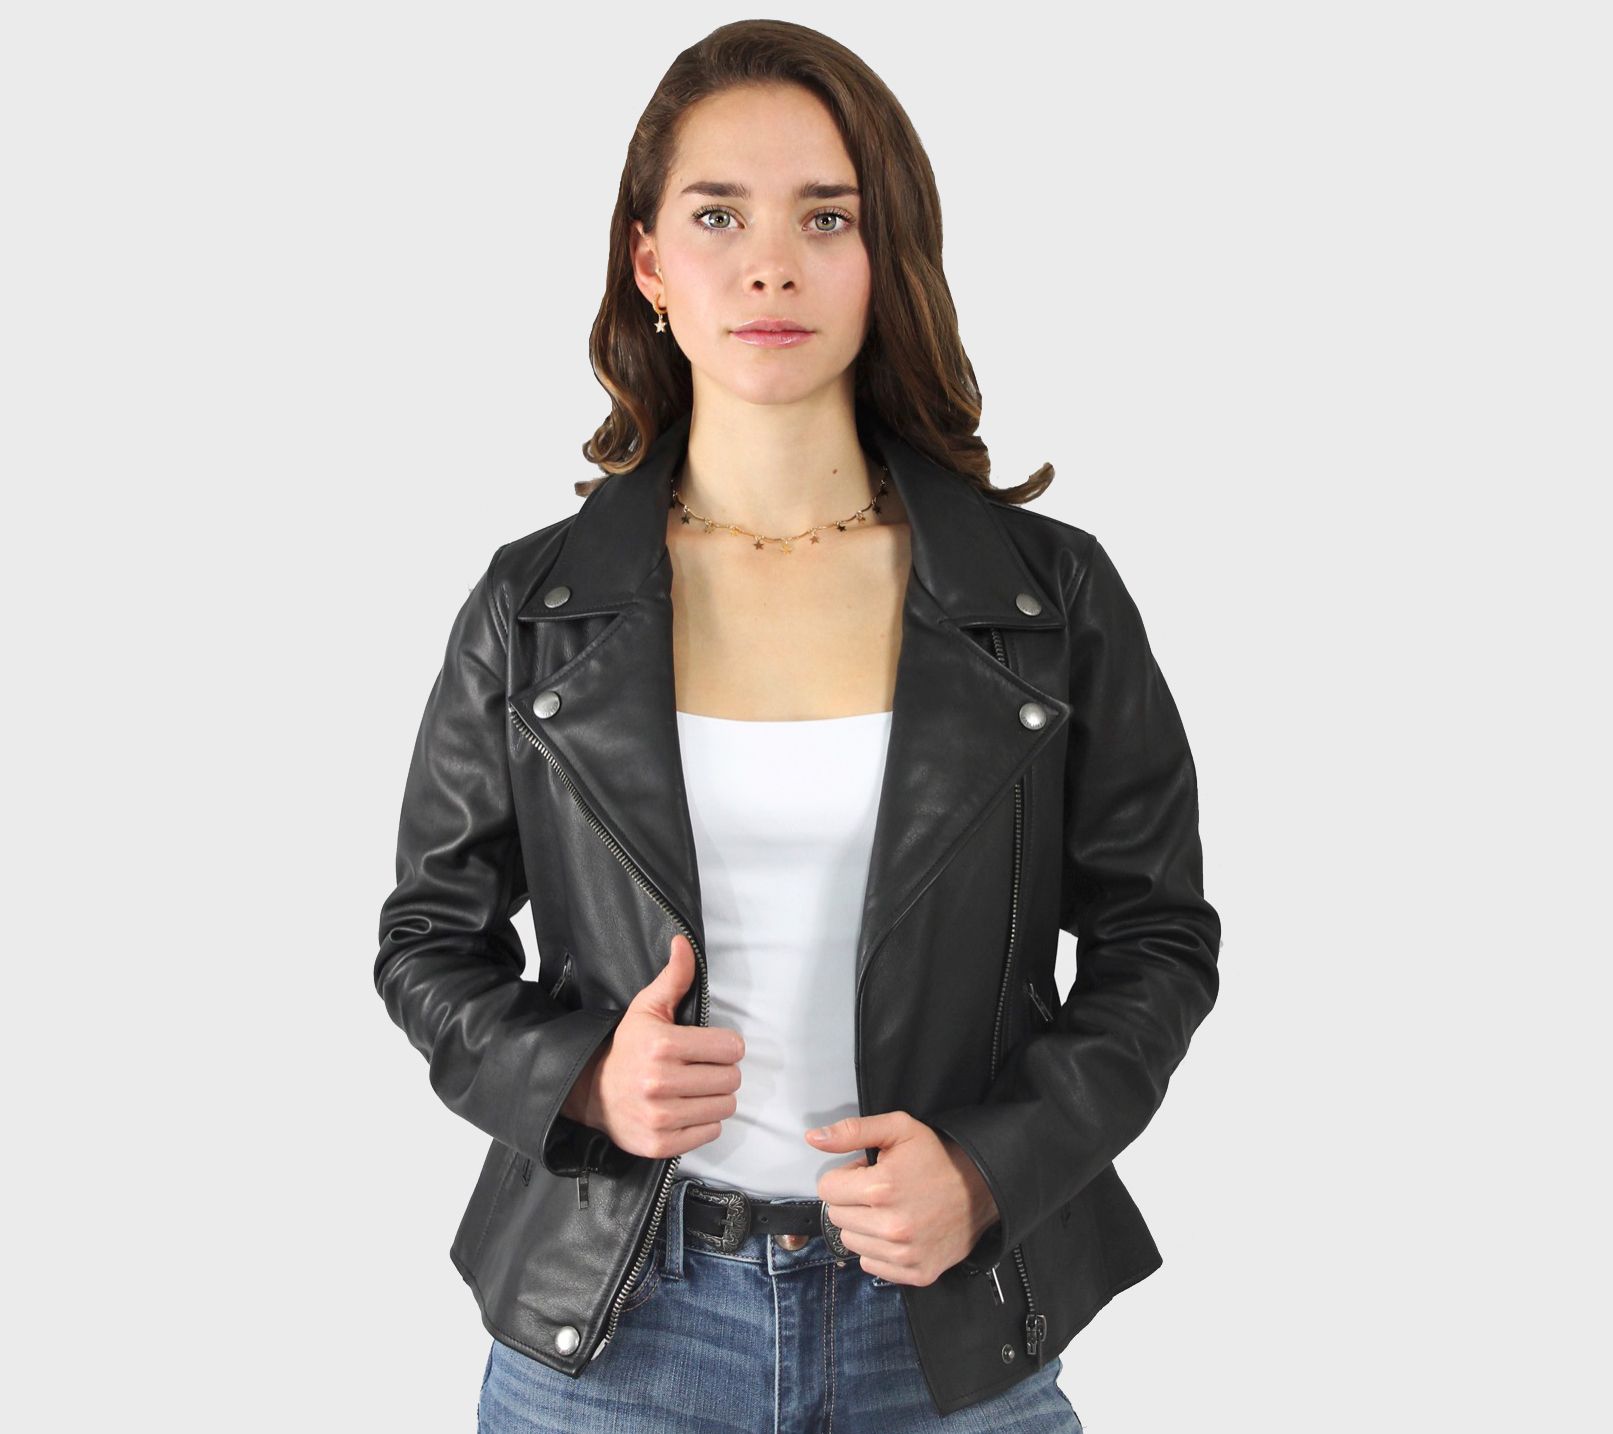 Frye Ladies' Leather Biker Jacket